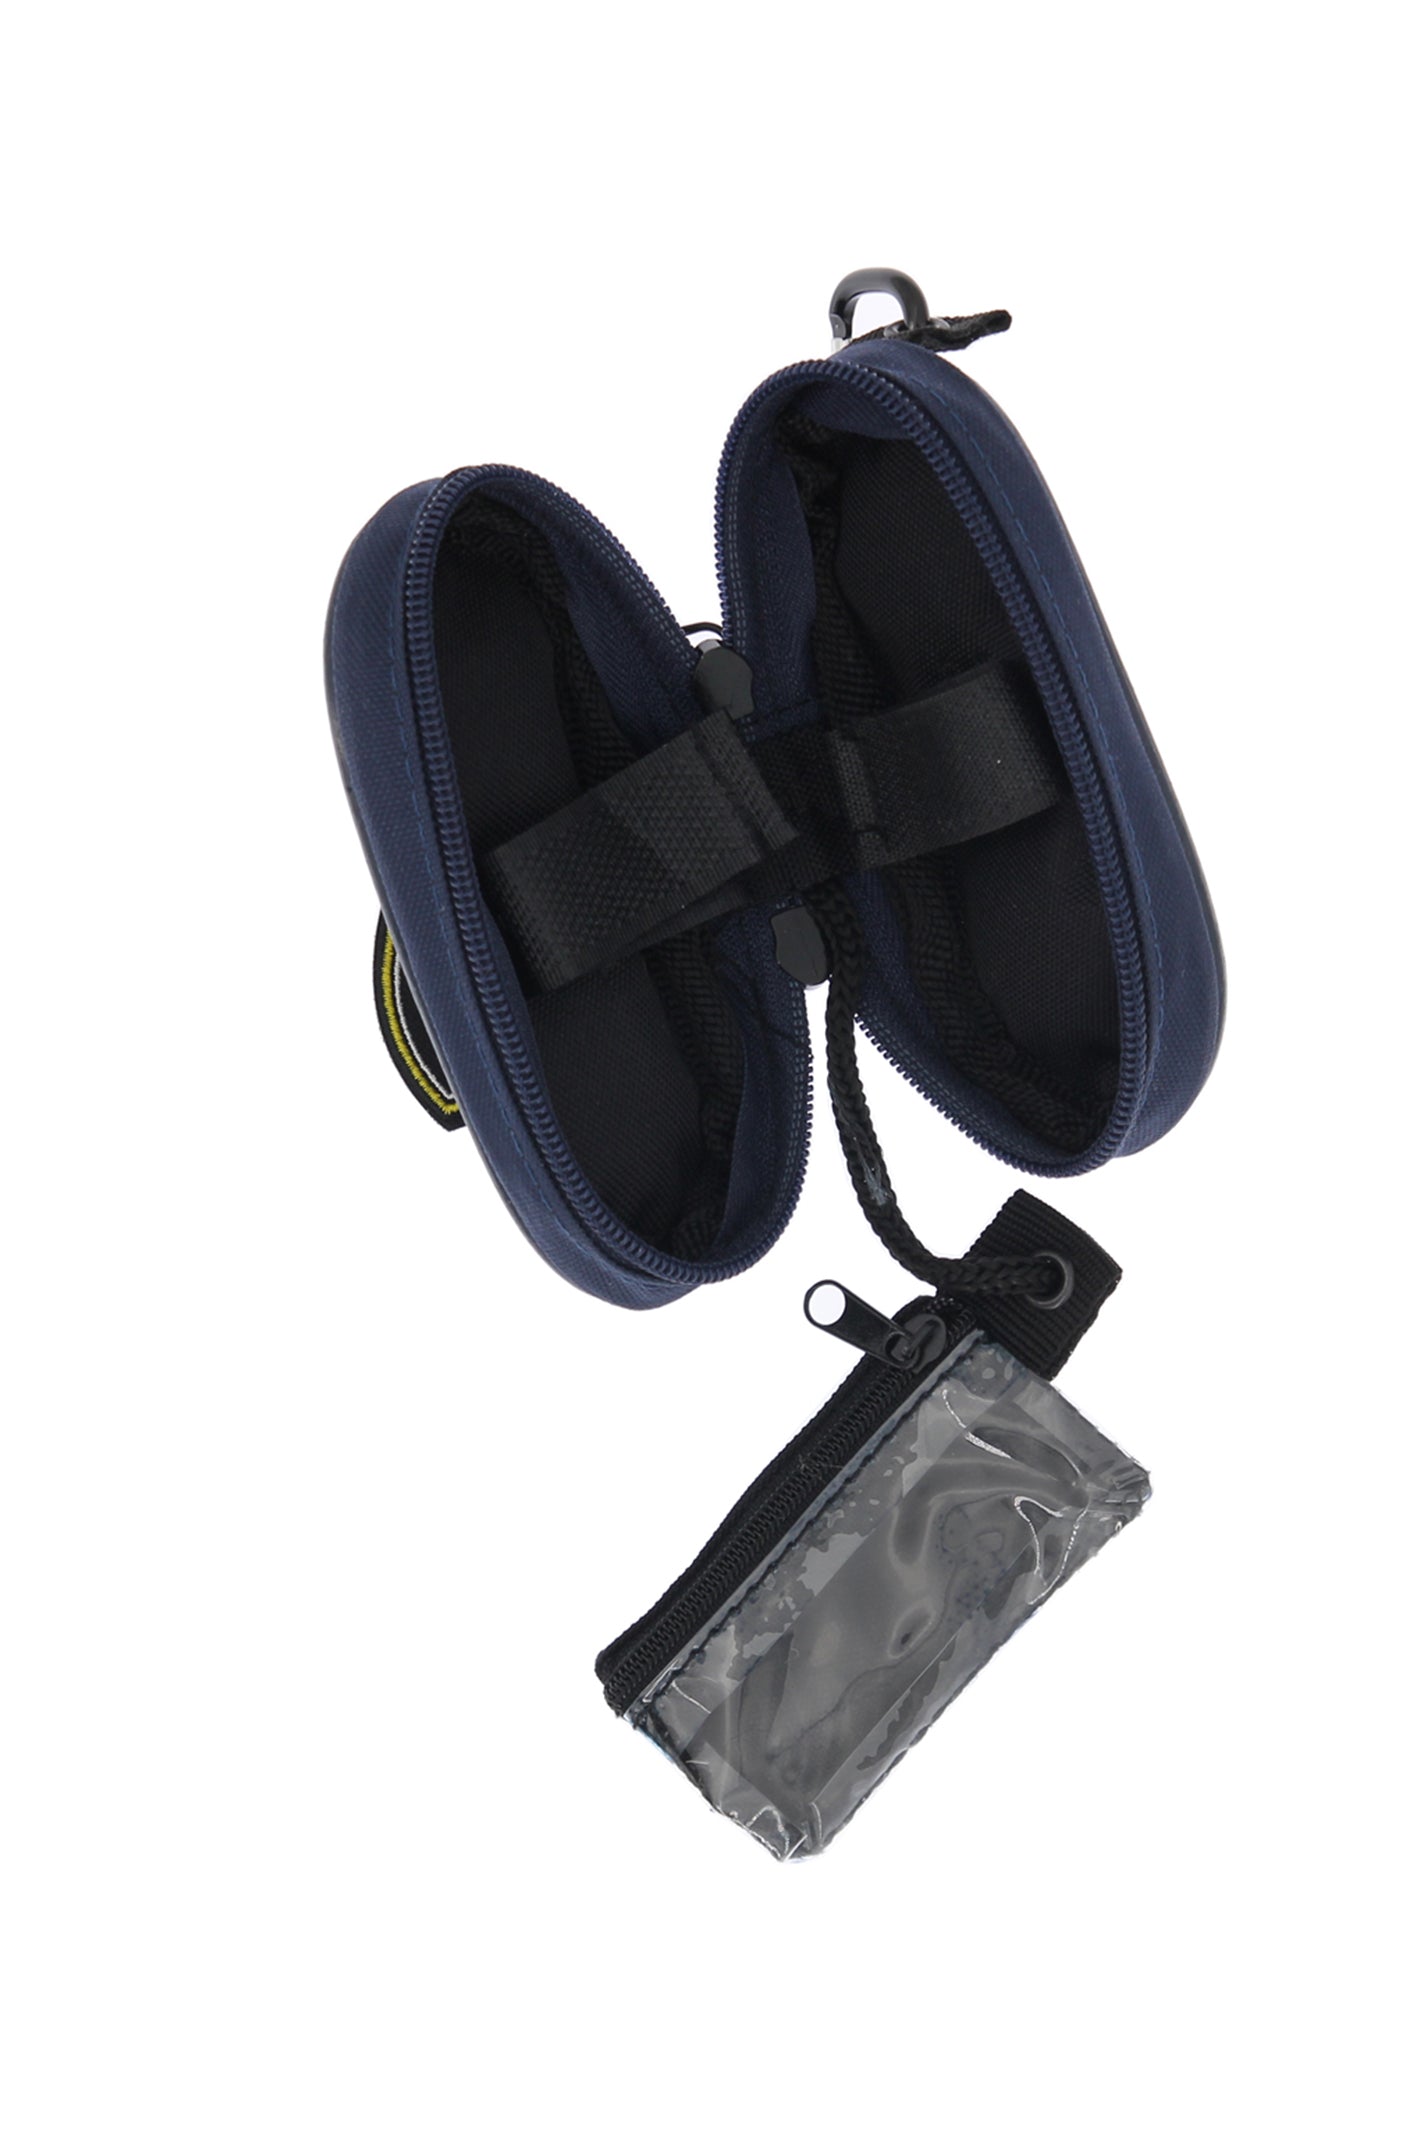 FlashBone - Spare Bag Carabiner Clip – FlashBone Fingerboards